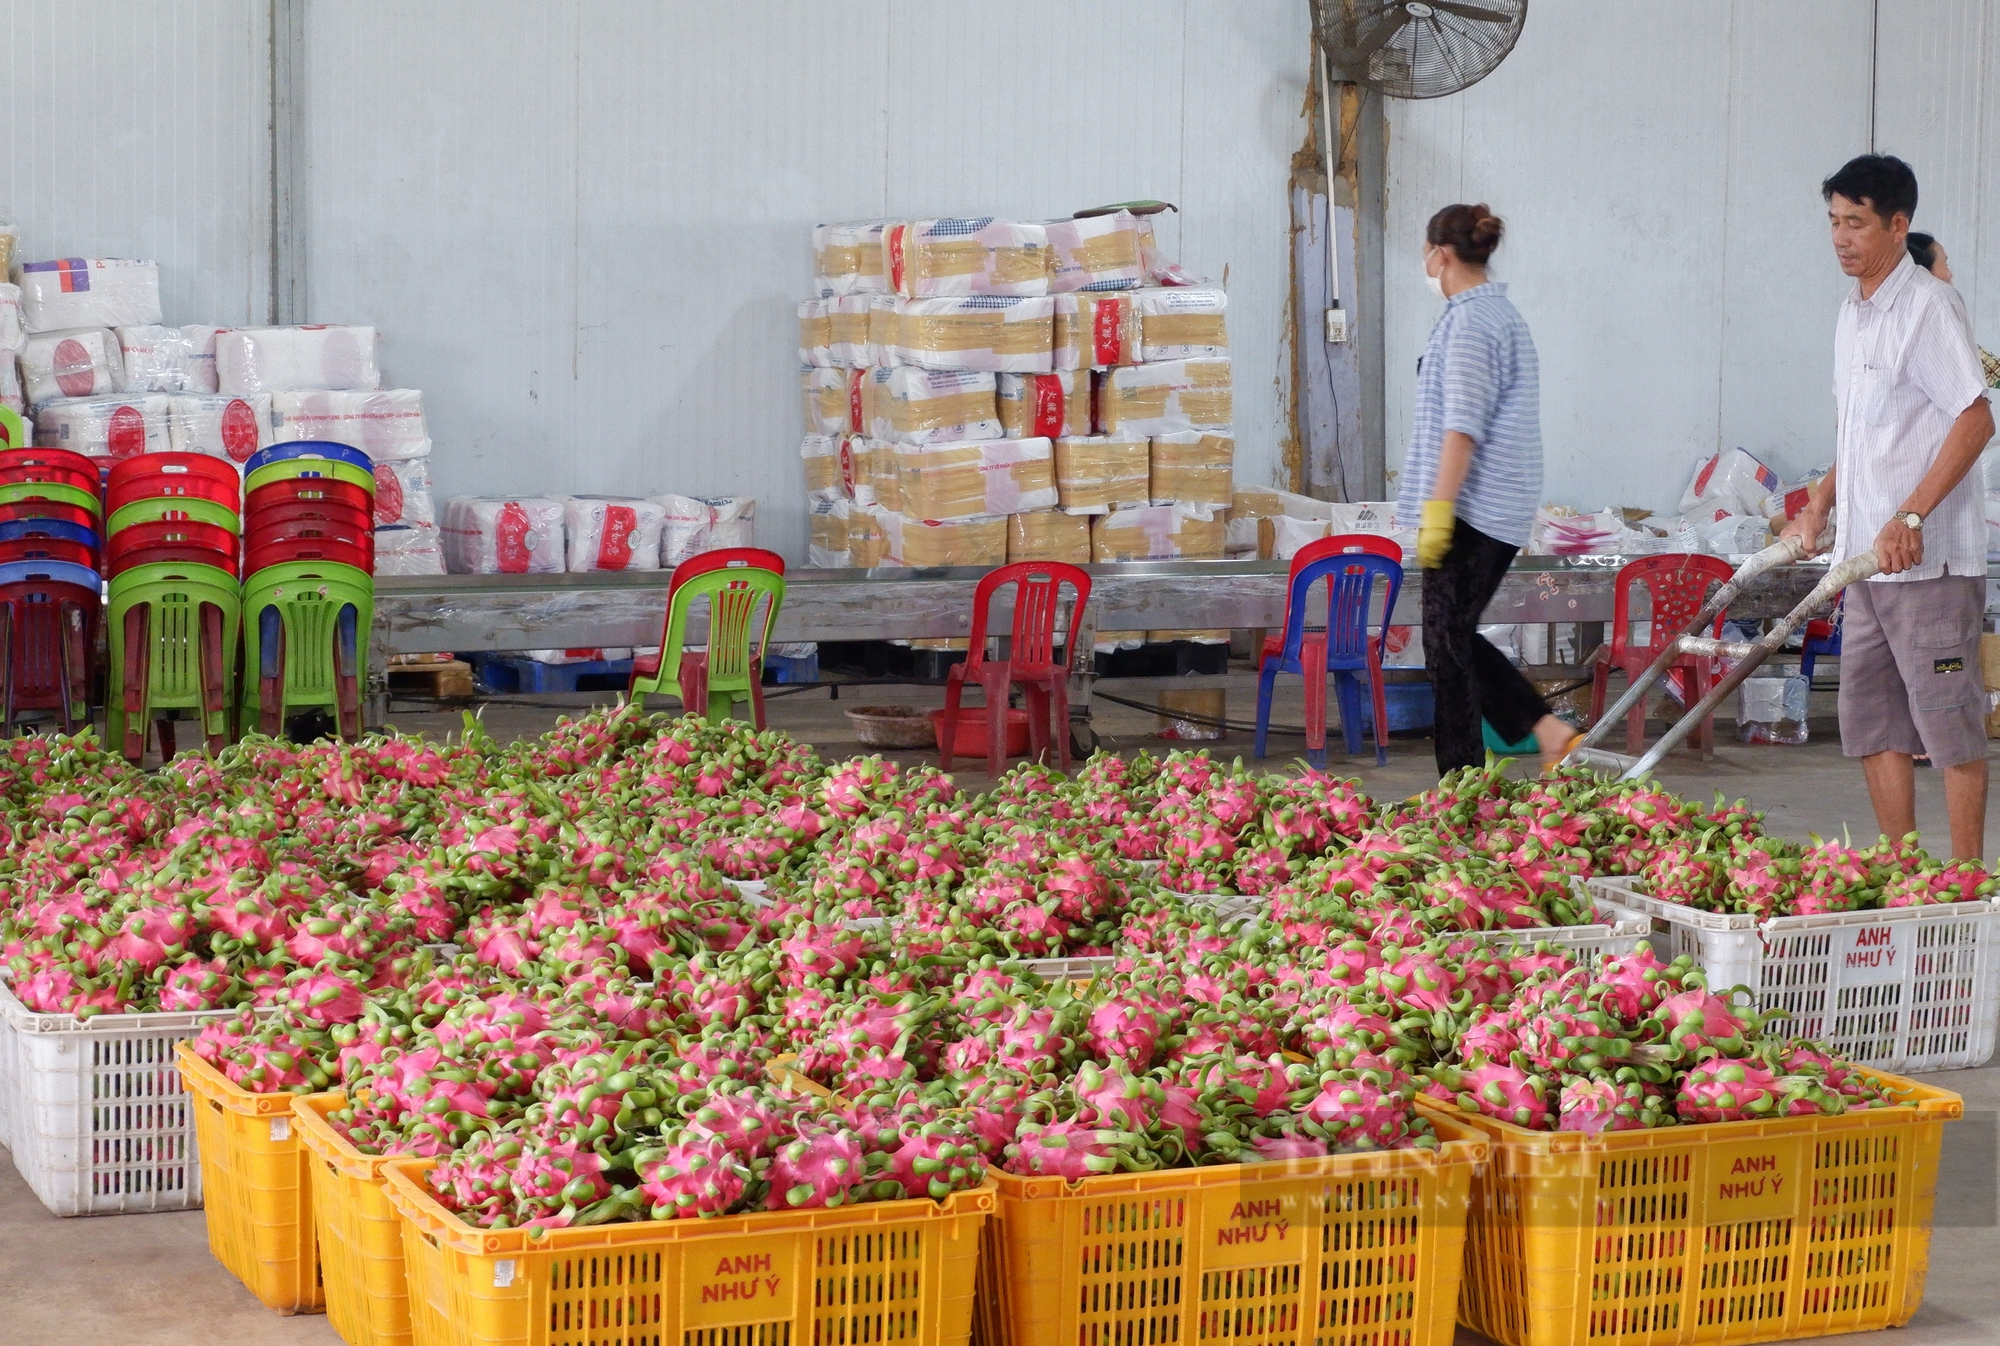 Bình Thuận: Phát triển ngành nông nghiệp hiện đại, bền vững, có giá trị gia tăng cao - Ảnh 7.